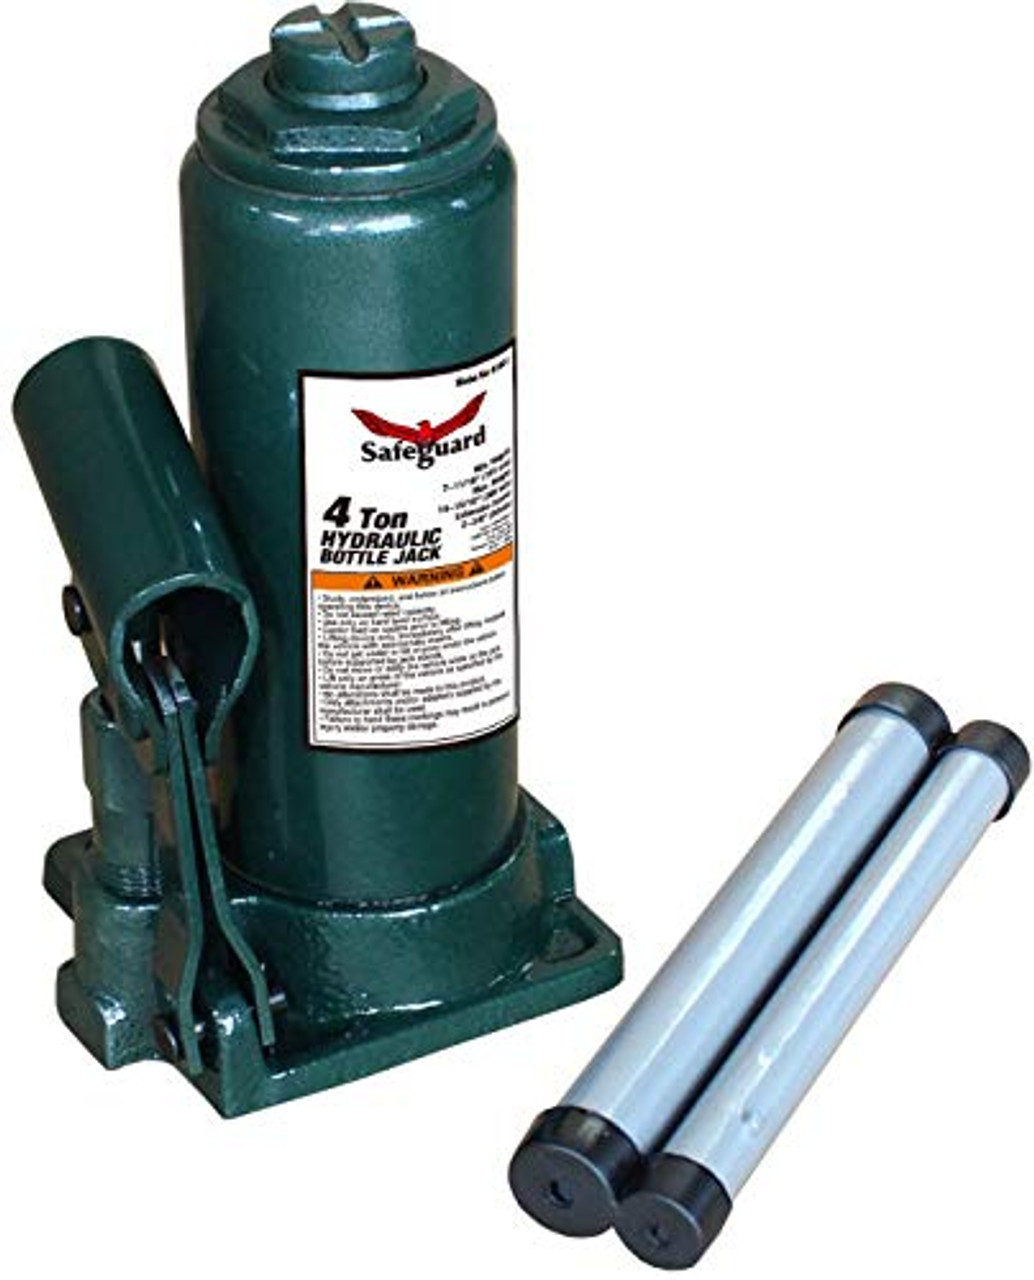 Safeguard 61041 Bottle Jack, Steel, Ton Capacity JB Tools